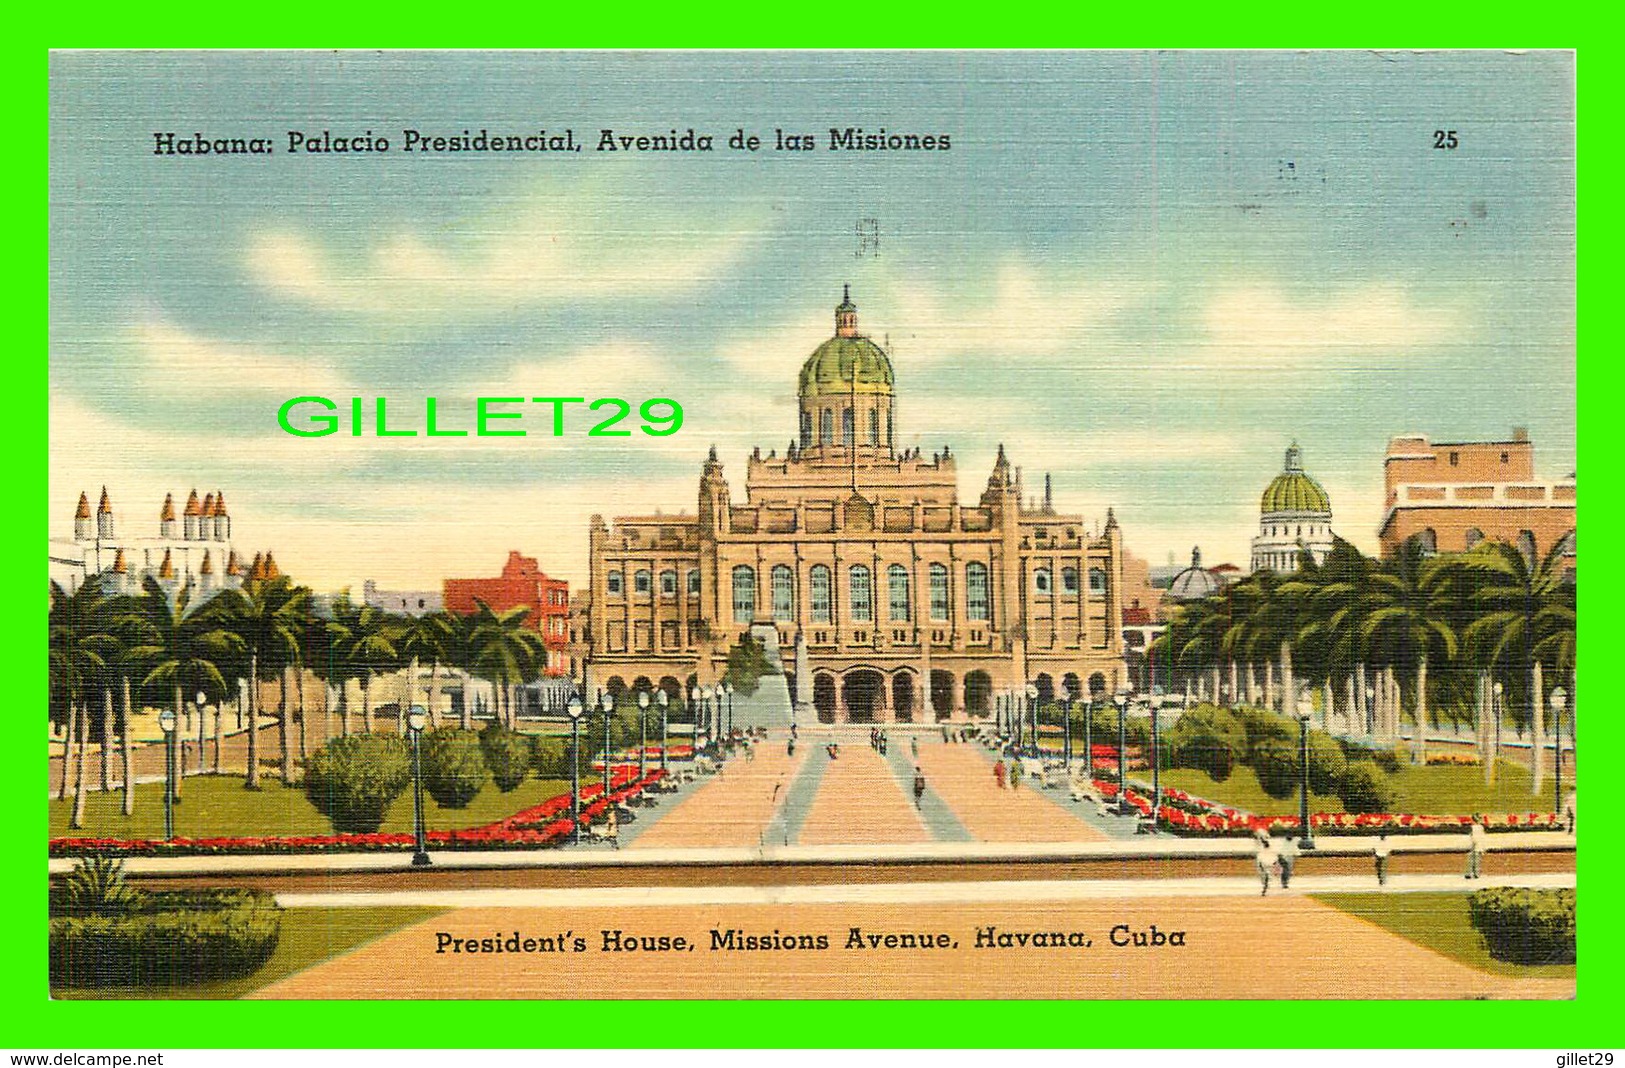 HAVANA, CUBA - HABANA, PALACIO PRESIDENCIAL, AVENIDA DE LAS MISIONES - TRAVEL IN 1948 - - Cuba